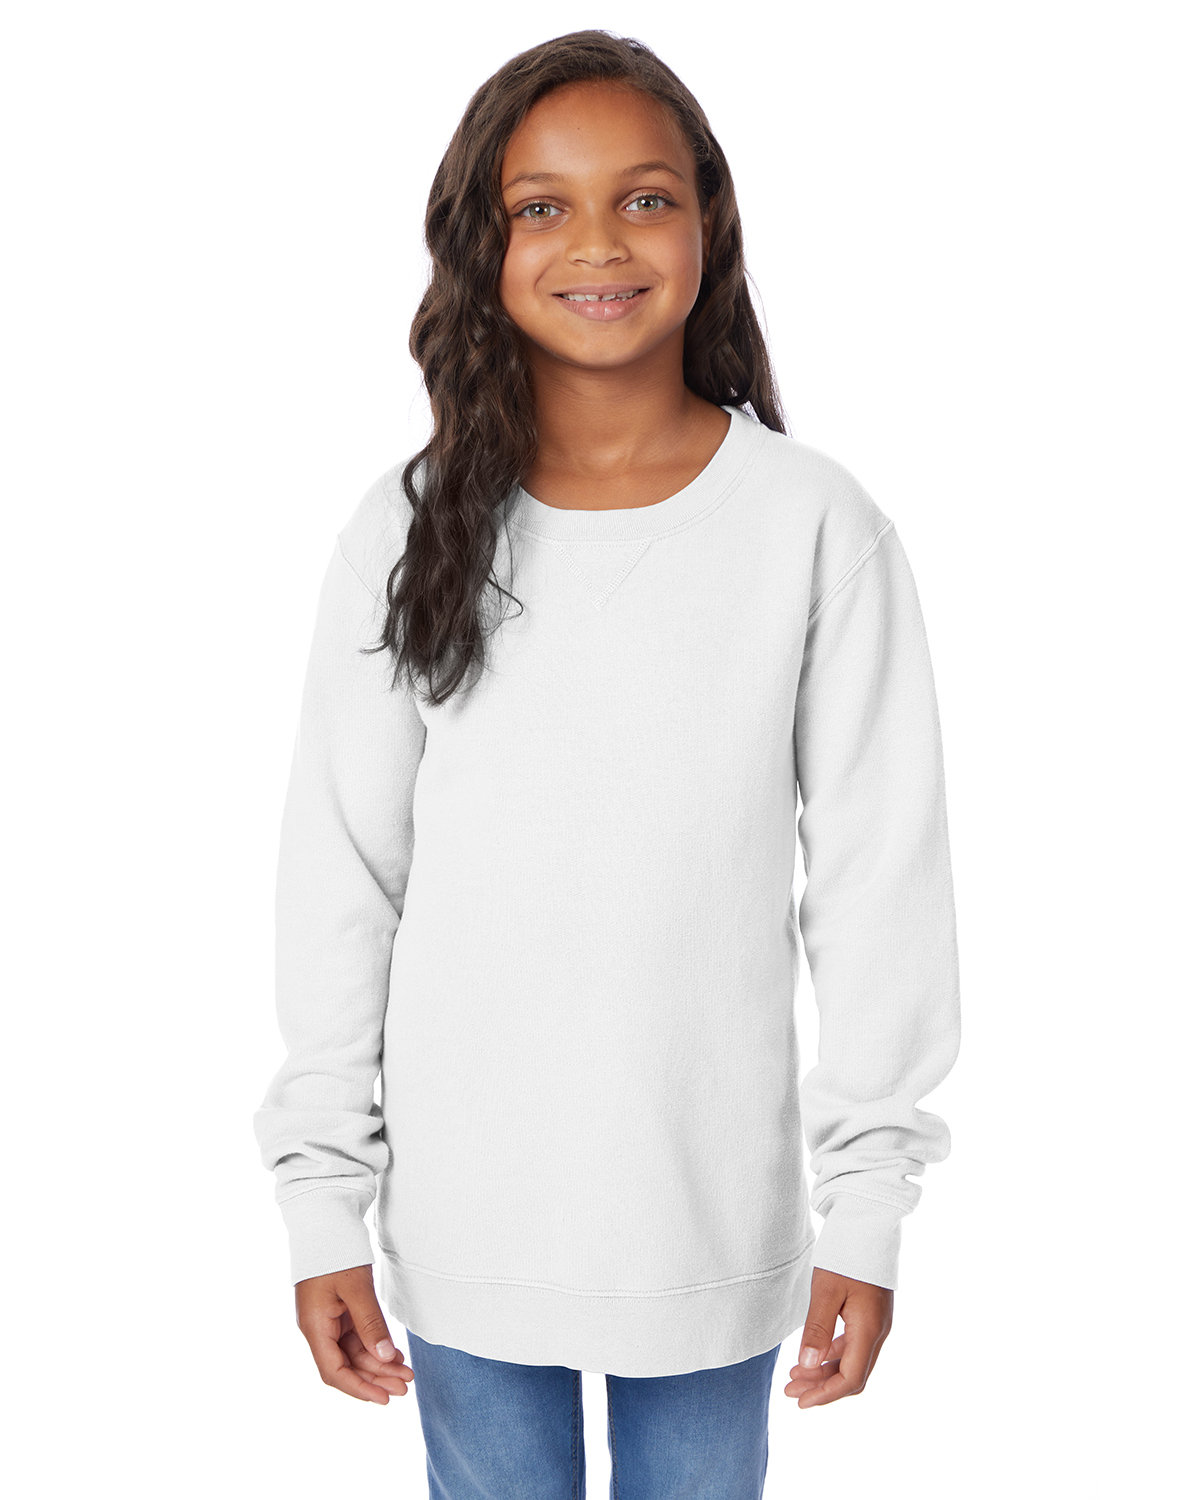 Youth Fleece Sweatshirt-ComfortWash by Hanes